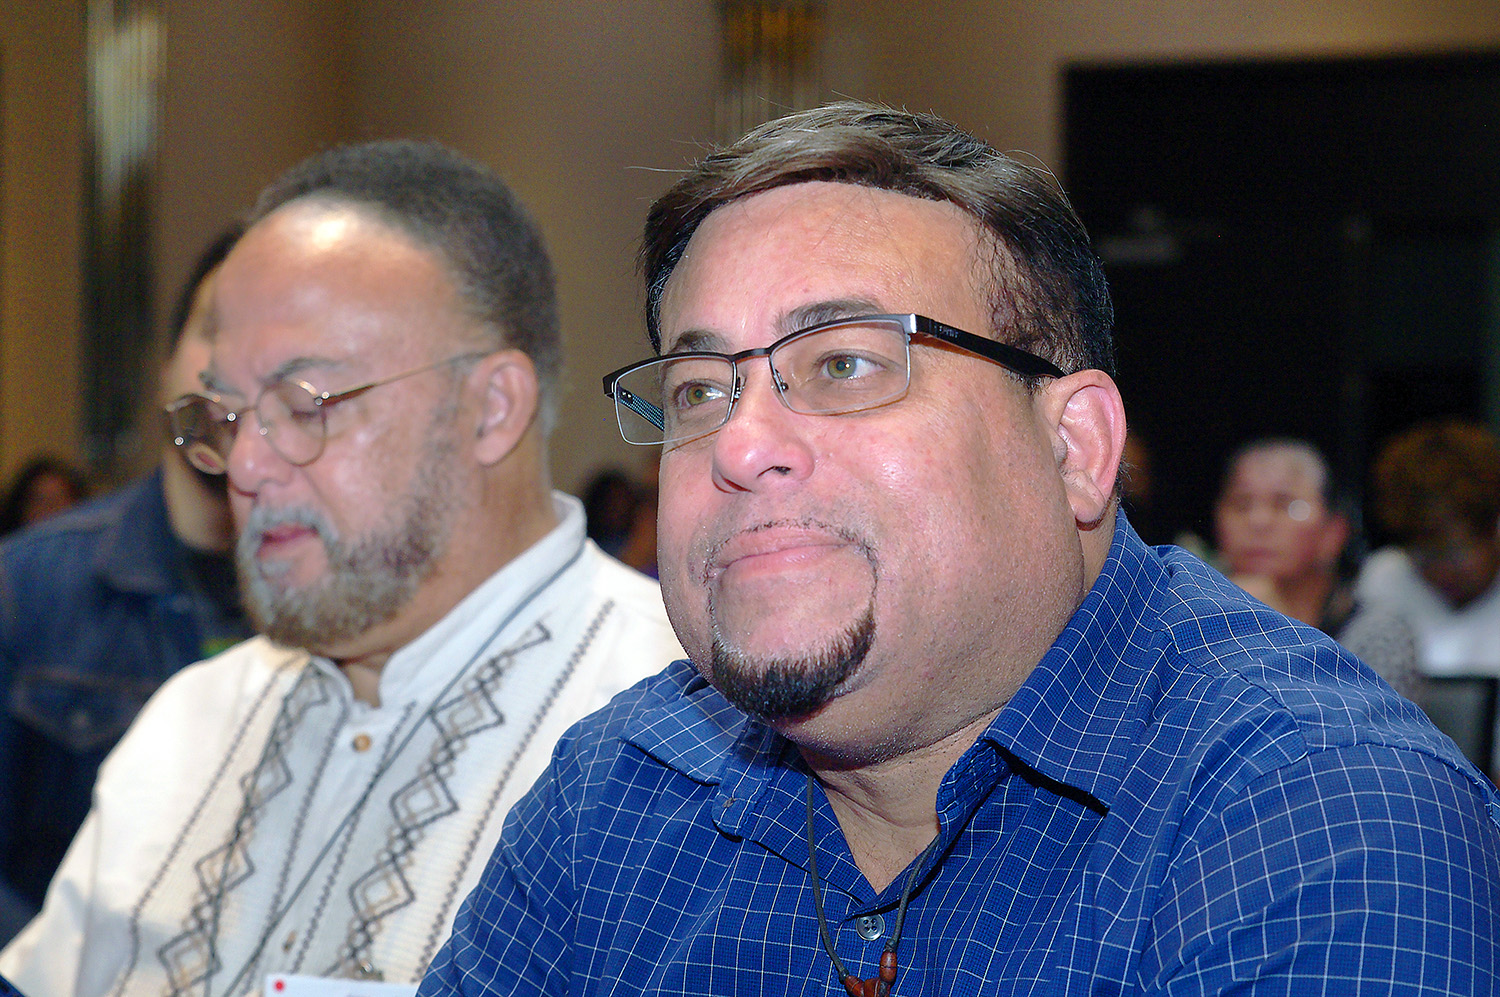 Los reverendos Irvin y Edwin Cotto, Director de Desarrollo Congregacional de la Conferencia del Este de Pensilvania y Pastor de la IMU Cristo en la Conferencia Anual de Florida respectivamente, son hermanos consanguíneos y reconocidos líderes dentro de la comunidad hispano-latina metodista unida. 